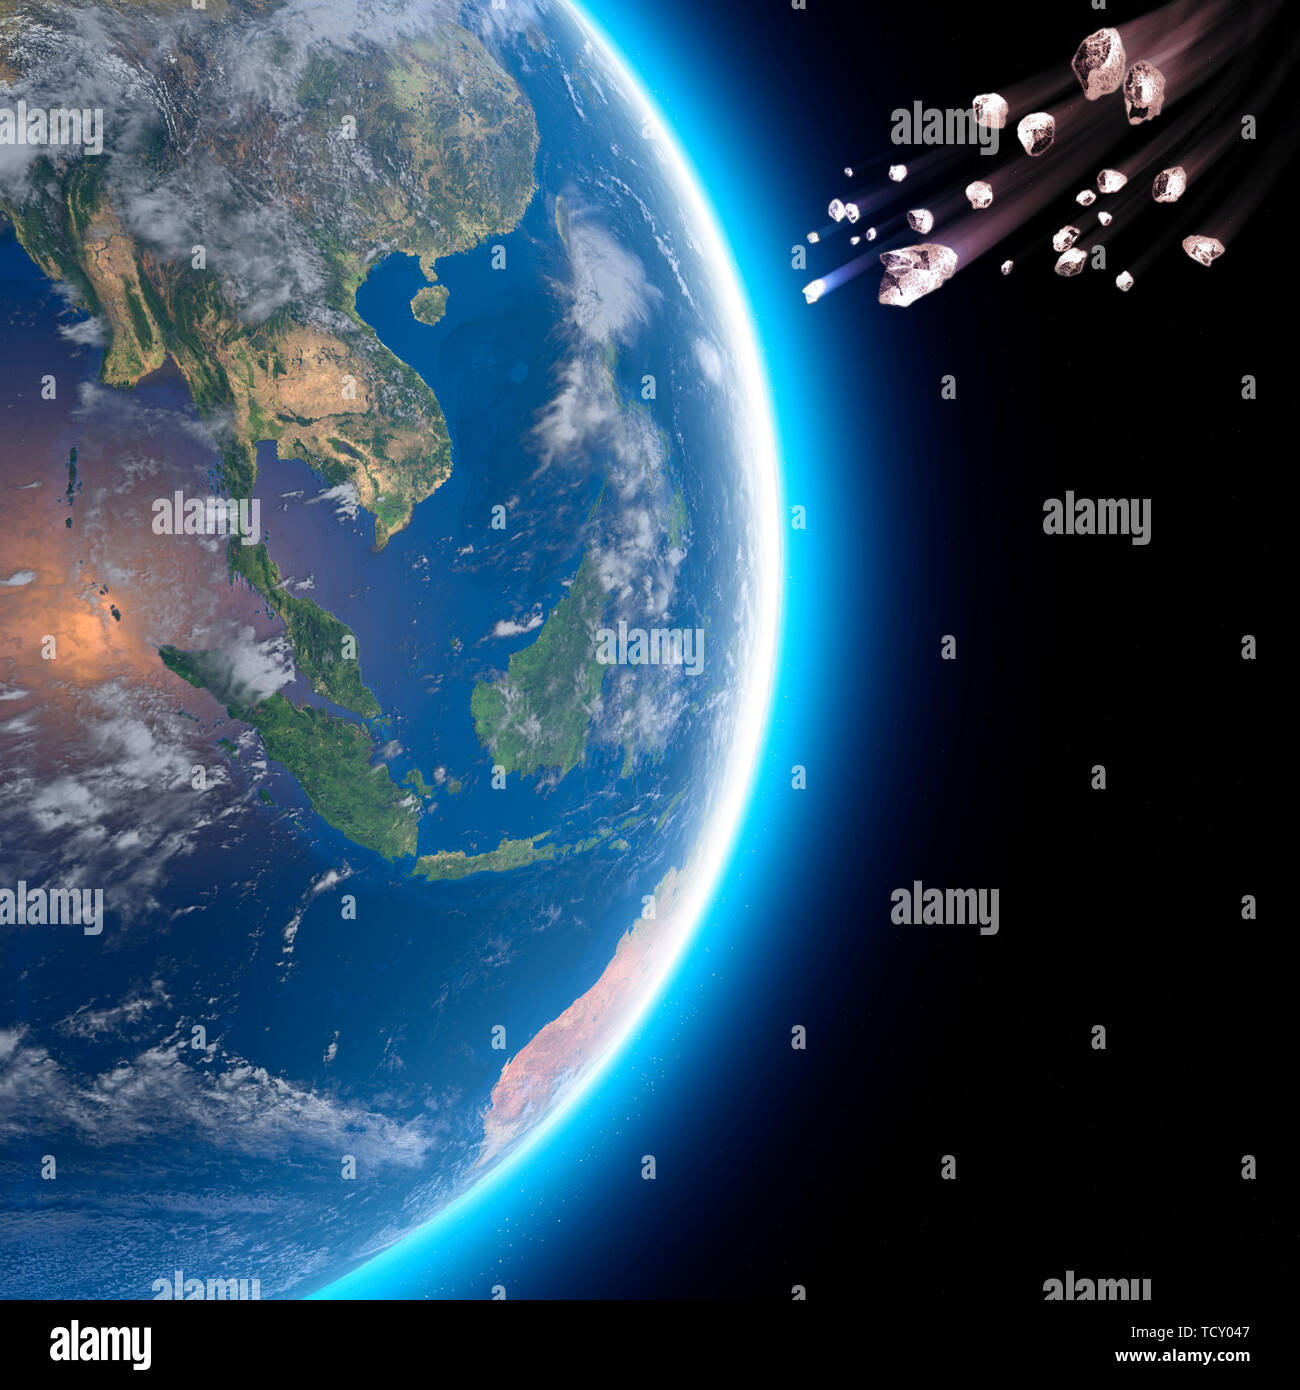 Les astéroïdes, météorites, comètes, étoiles des fragments de roche, de glace qui s'introduire dans l'atmosphère terrestre. Vue du monde, l'Asie du Sud Est. Banque D'Images